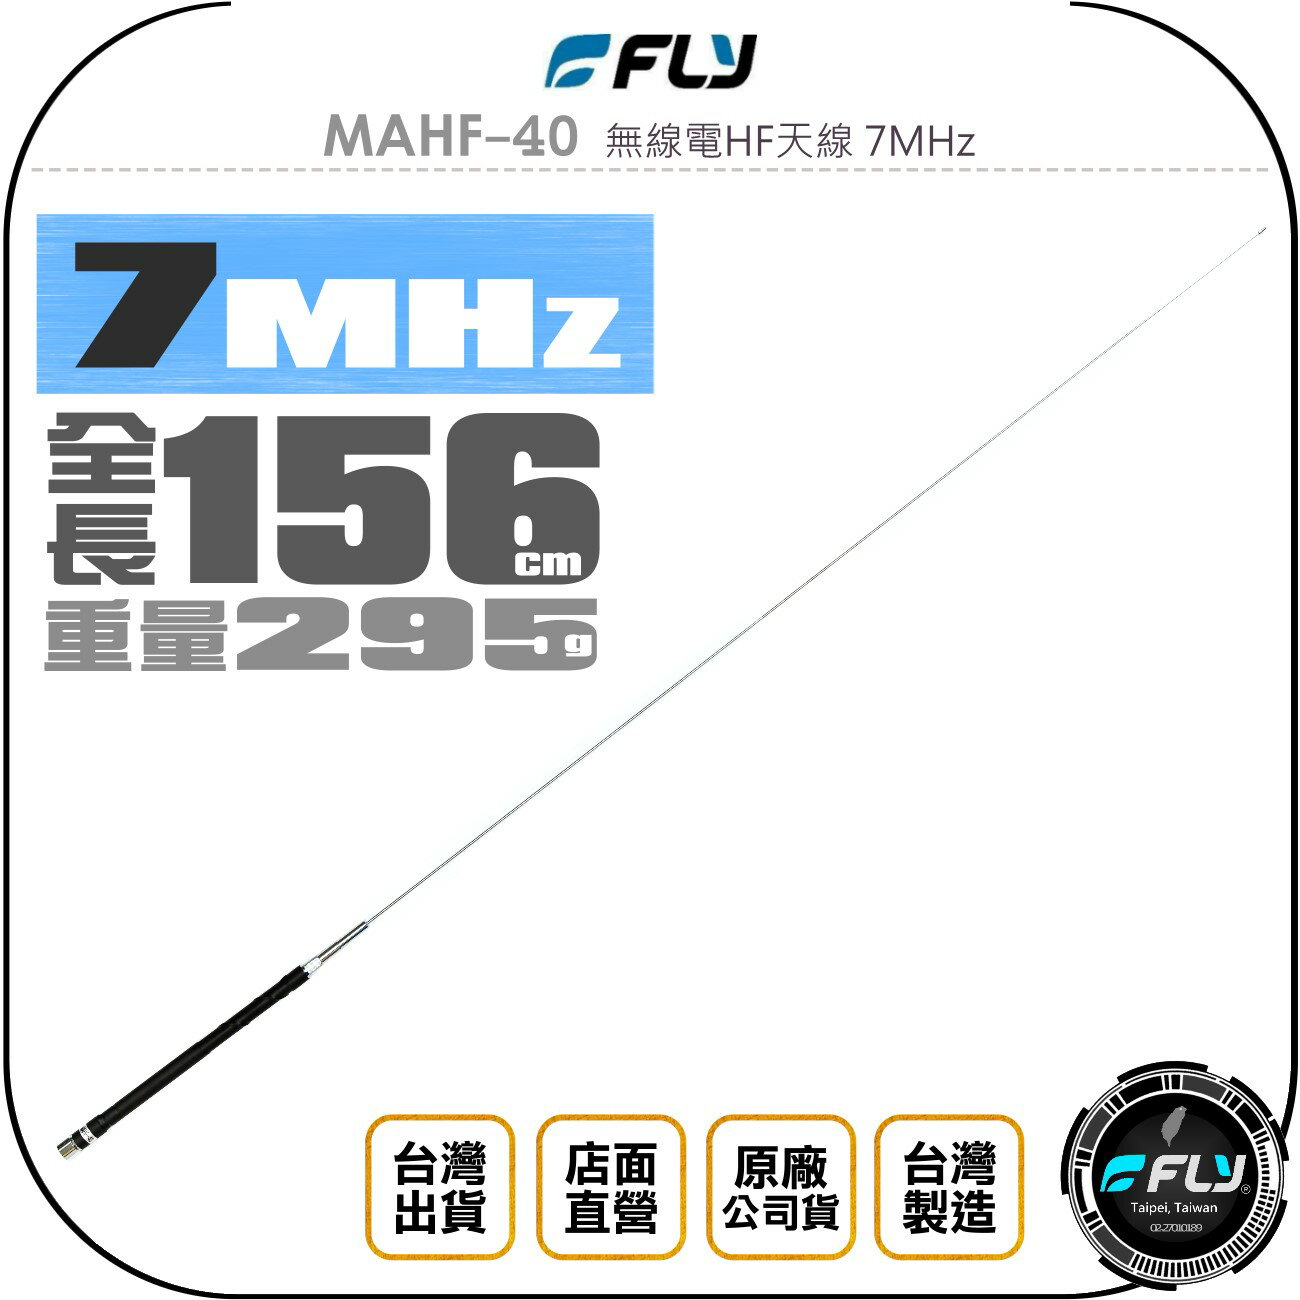 《飛翔無線3C》FLY MAHF-40 無線電HF天線 7MHz◉公司貨◉156cm◉適用 HF 短波機◉台灣製造